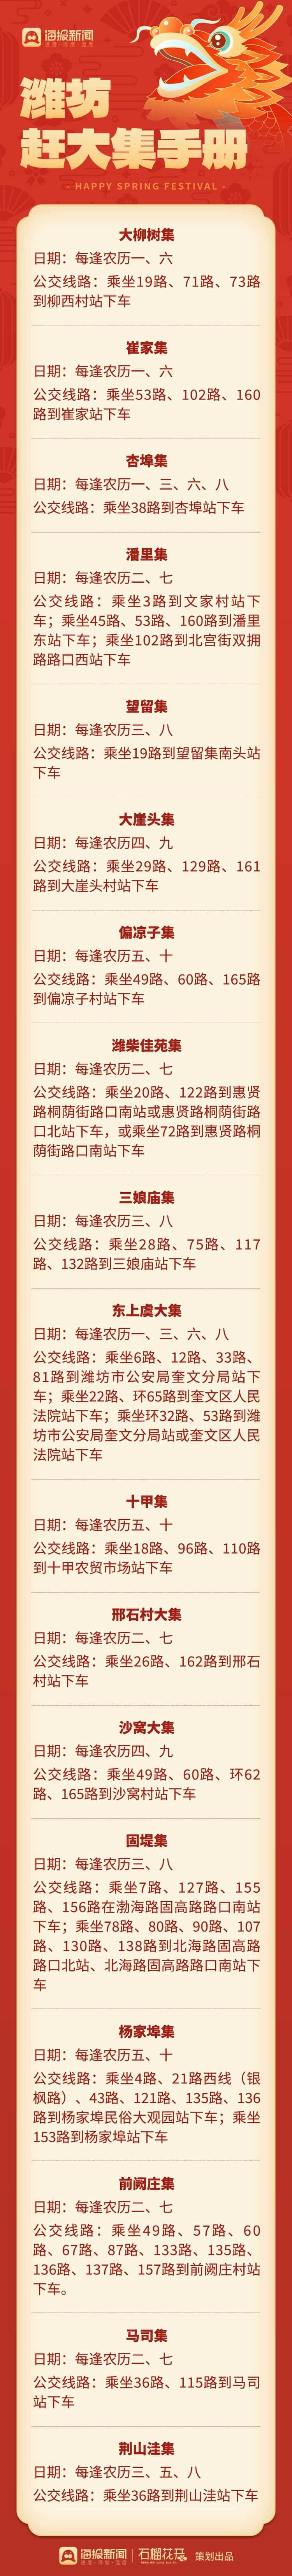 青州市区大集一览表图片